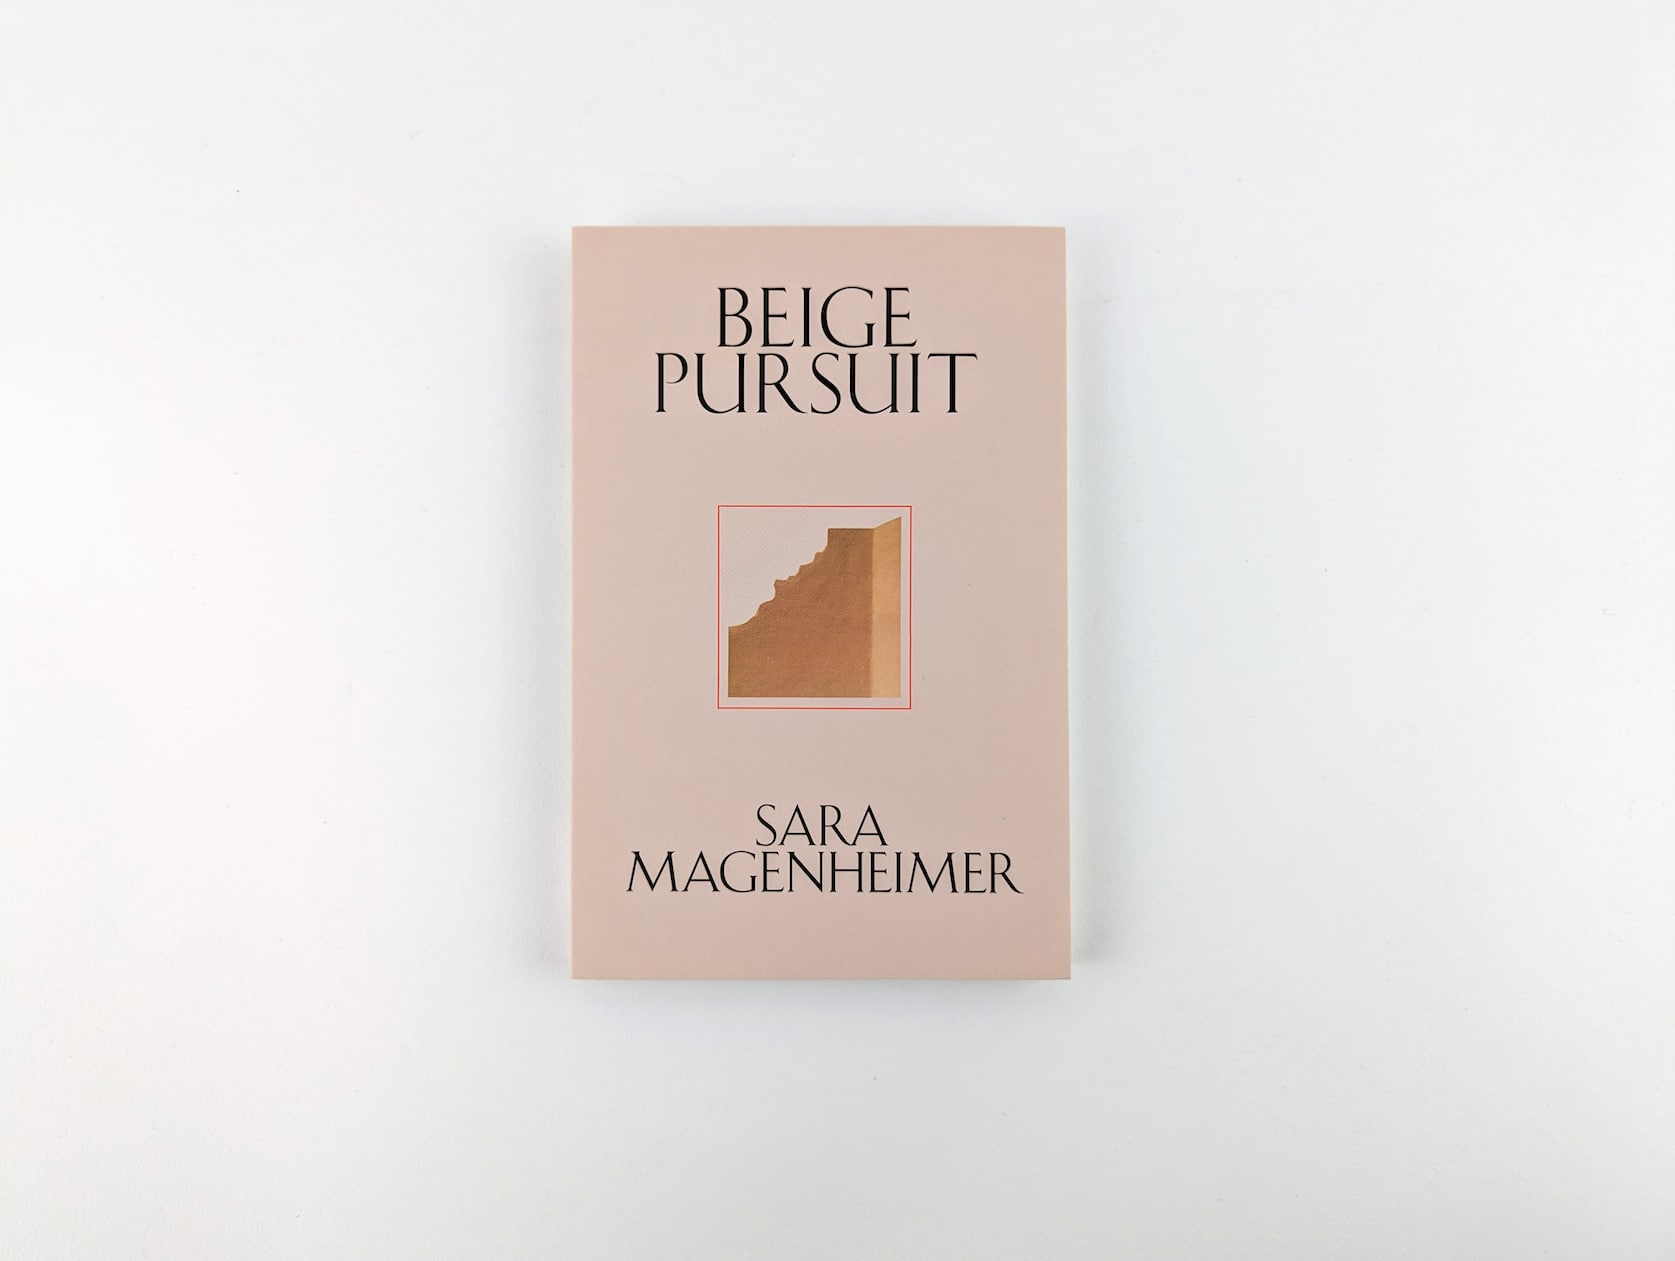 Beige Pursuit by Sara Magenheimer